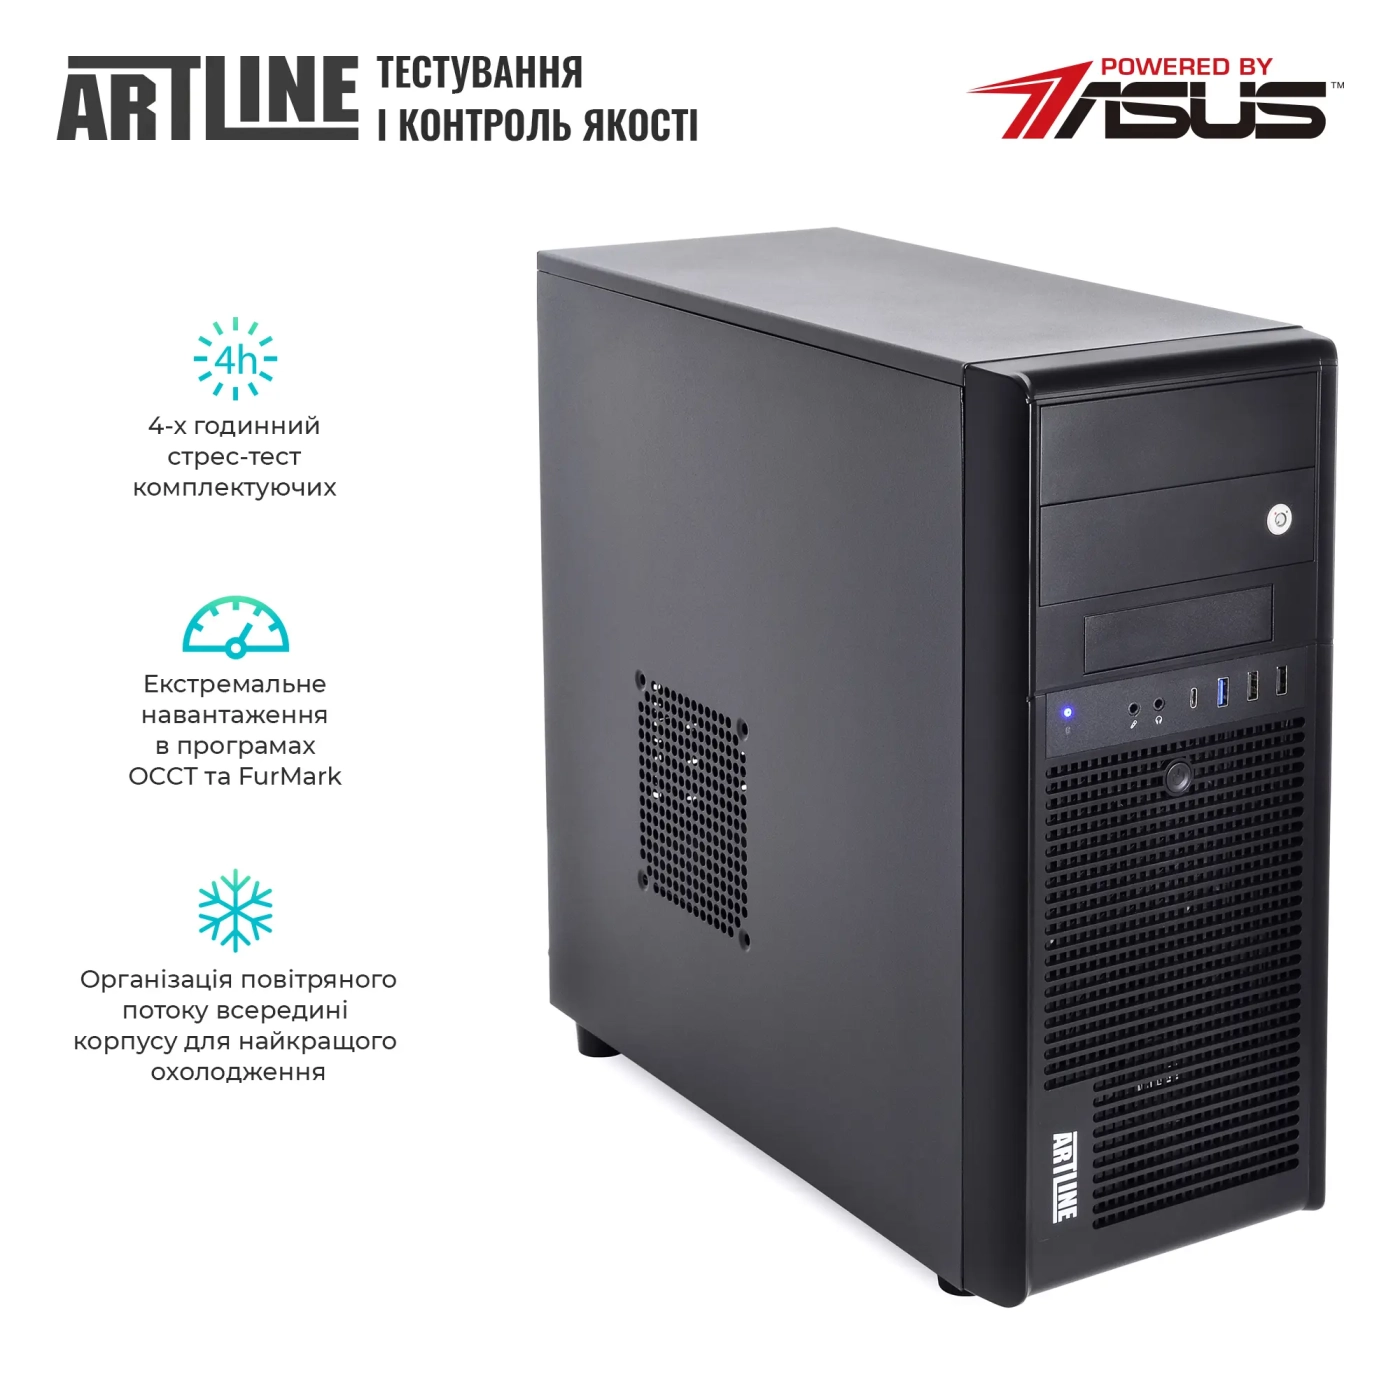 Купить Сервер ARTLINE Business T35 (T35v37) - фото 7